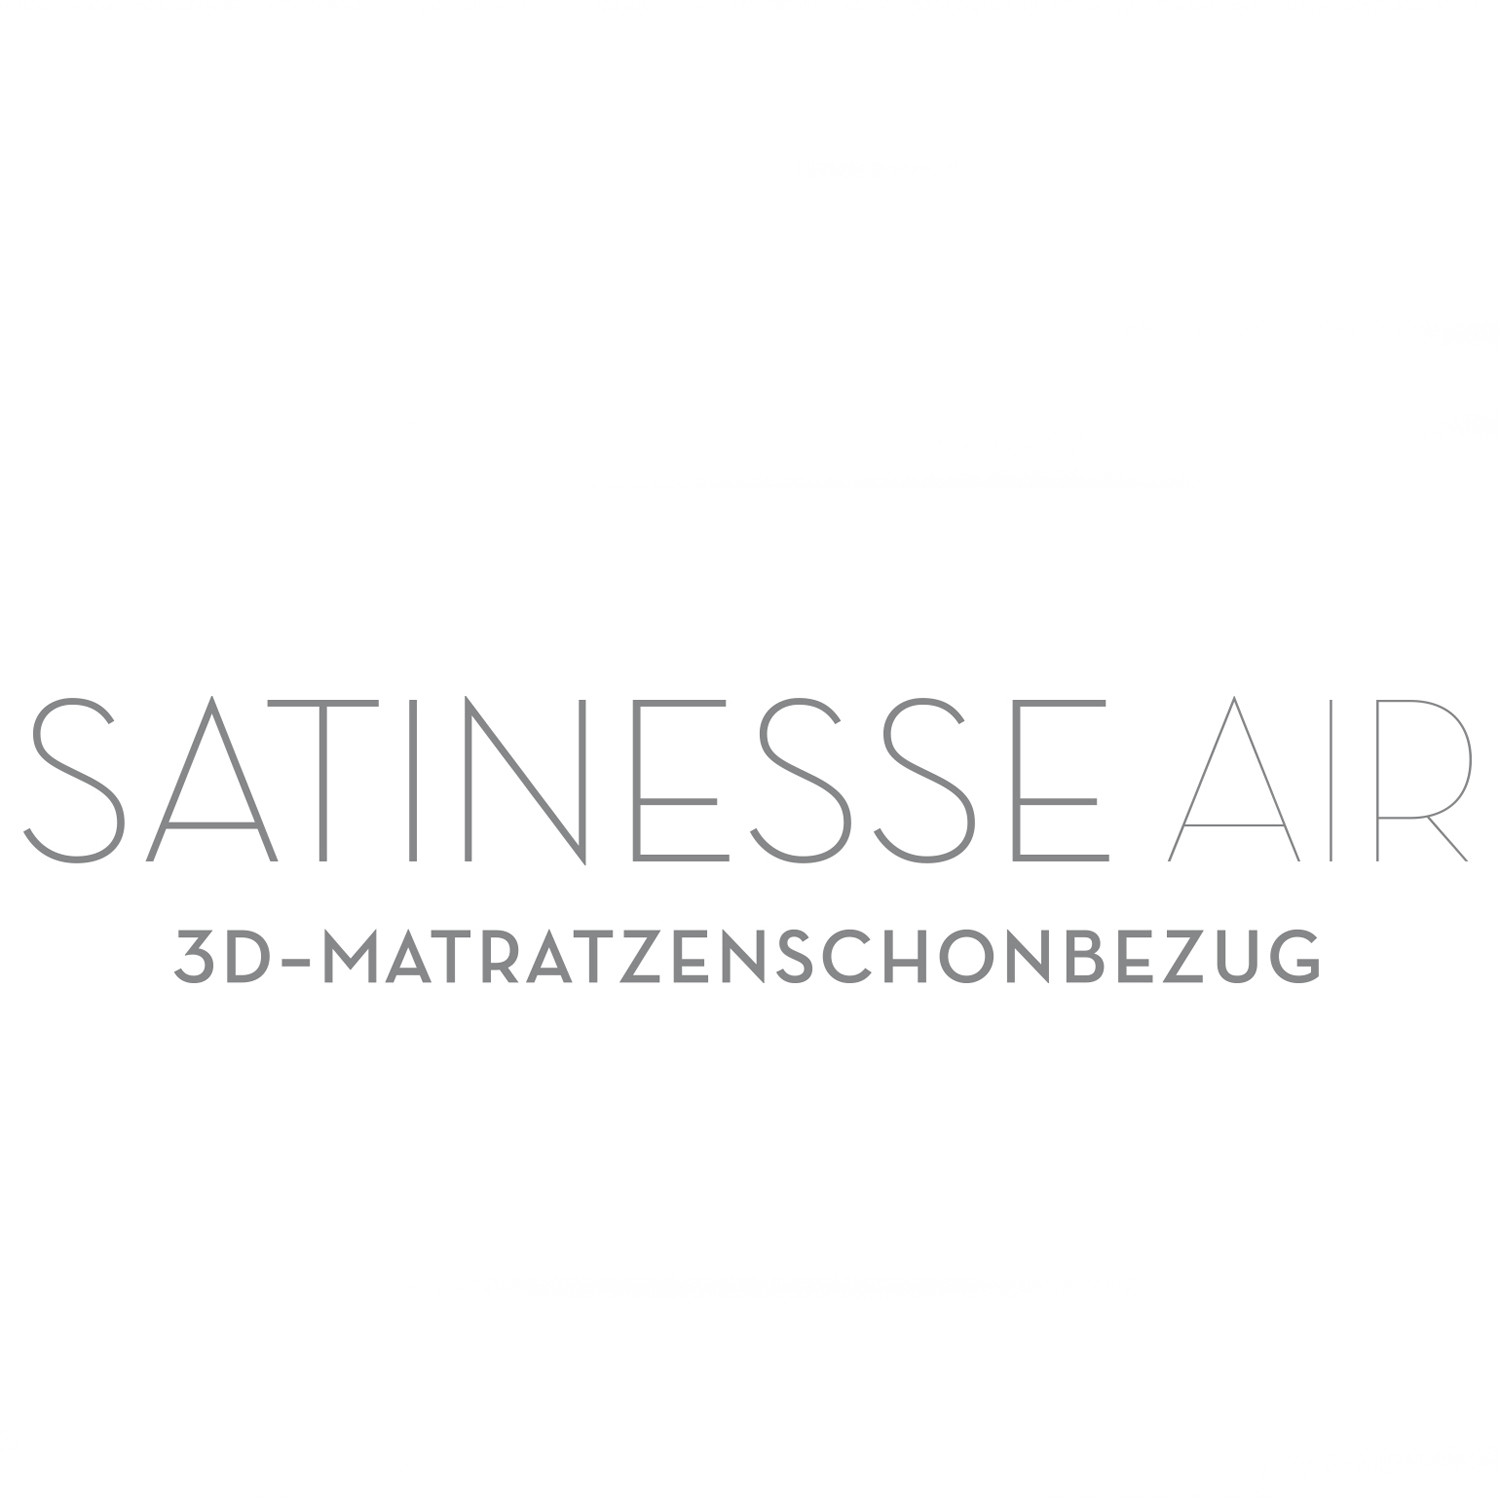 FORMESSE Kissenschonbezug Satinesse Air Silver wollweiß 50x70cm